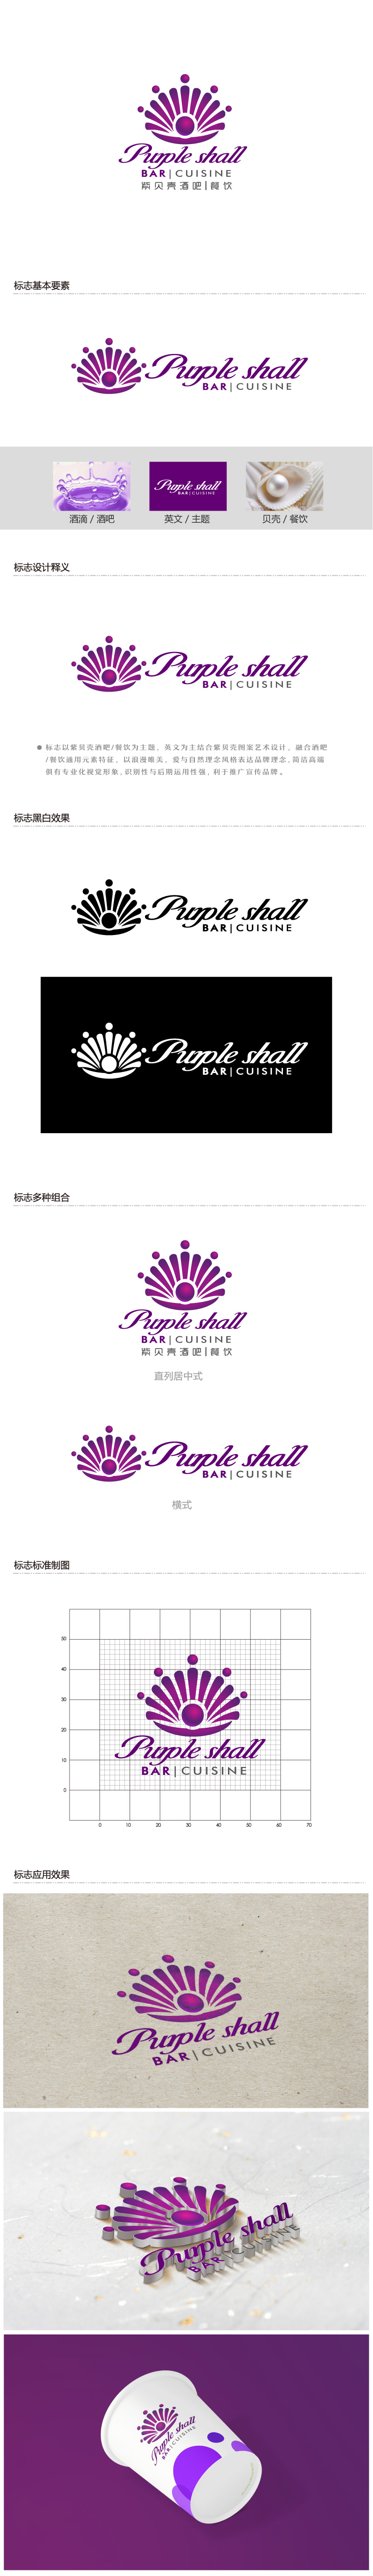 陈晓滨的紫贝壳酒吧/餐饮Purple shall bar/cuisinelogo设计